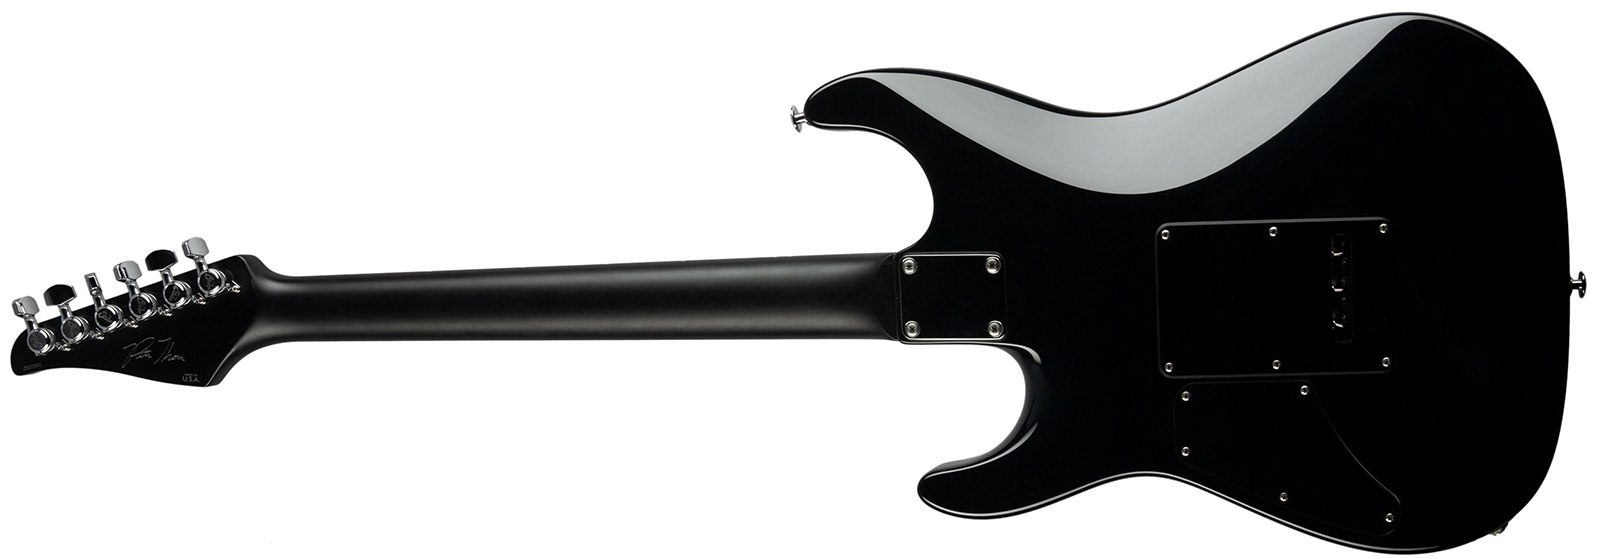 Suhr Pete Thorn Standard 01-sig-0029 Signature 2h Trem Rw - Garnet Red - Elektrische gitaar in Str-vorm - Variation 1